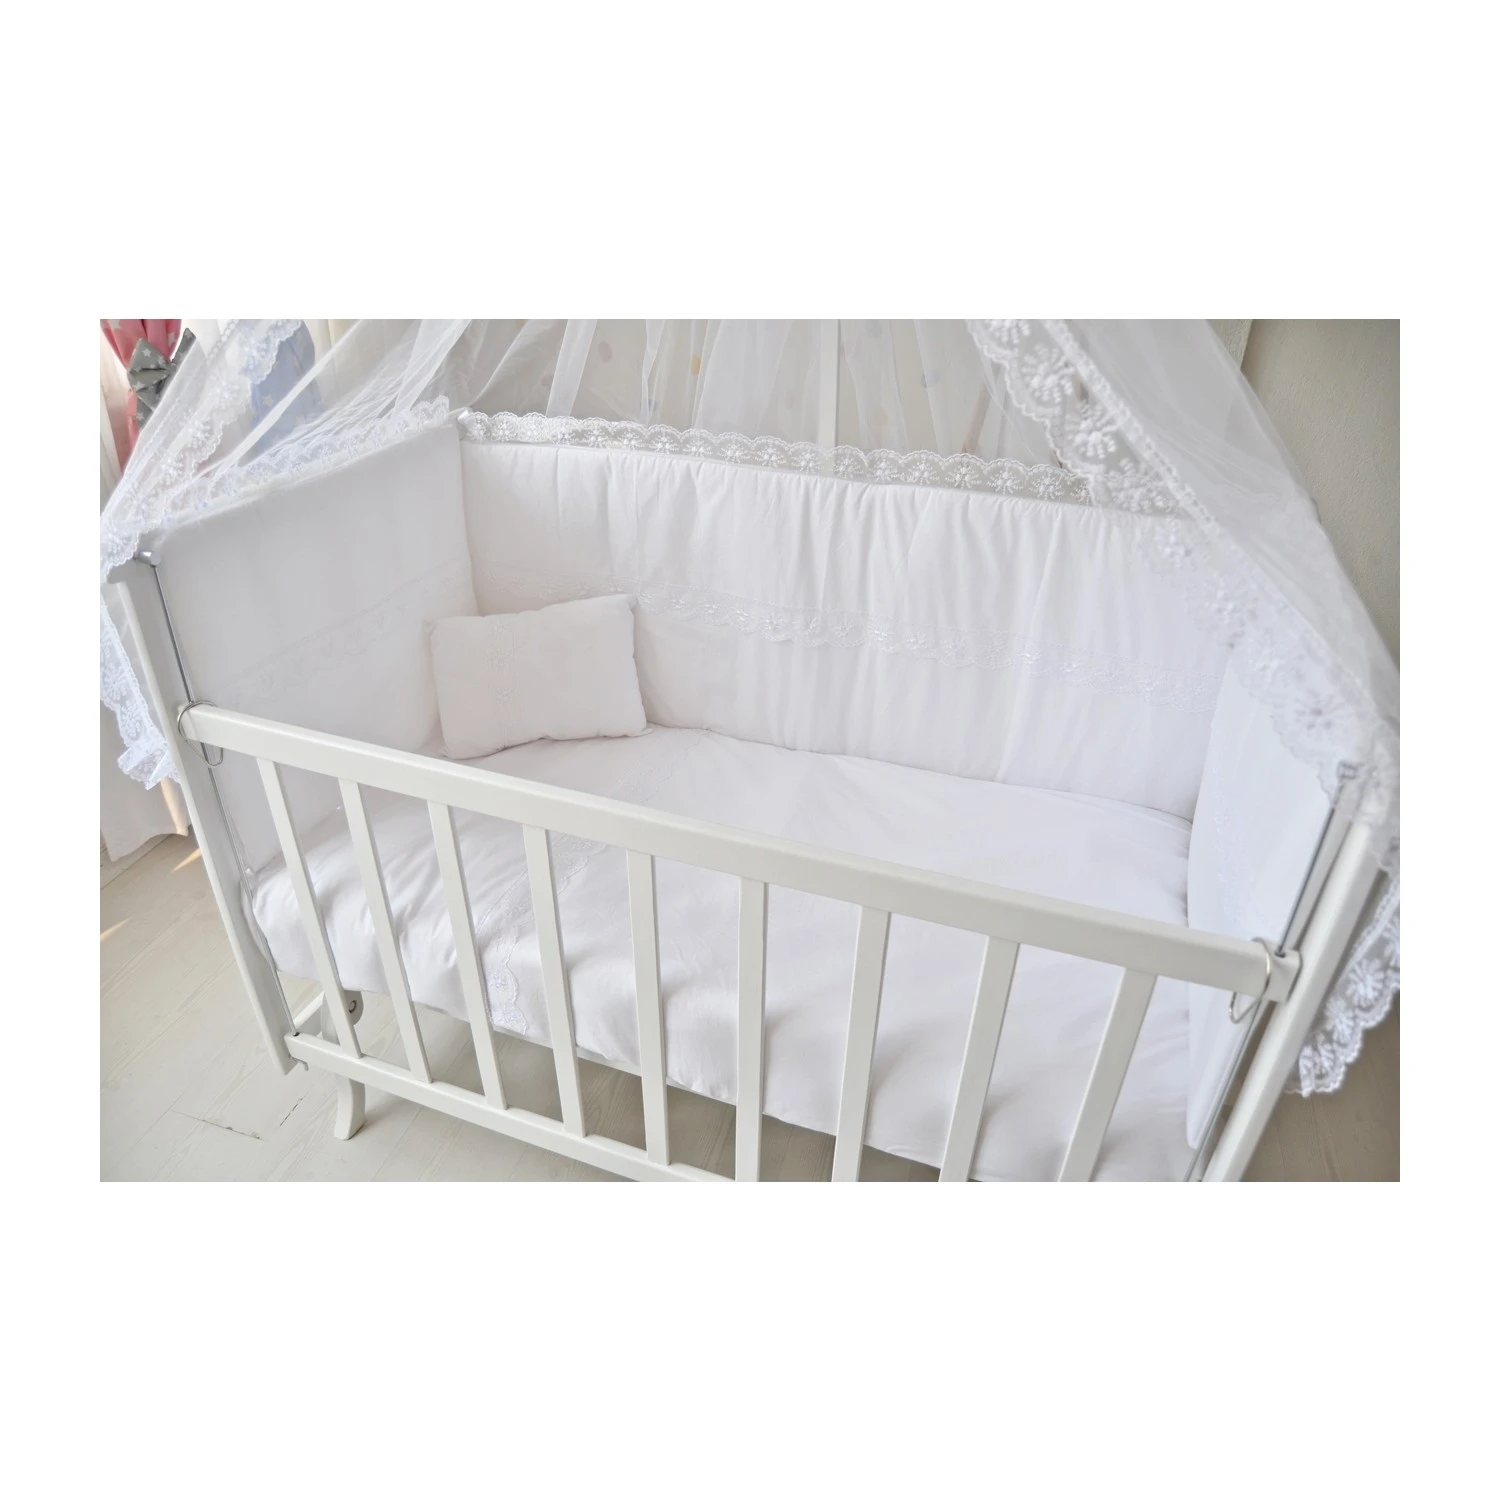 Drveni krevetac kolevka - drveni krevetac ili kolevka za bebe sa baldahinom